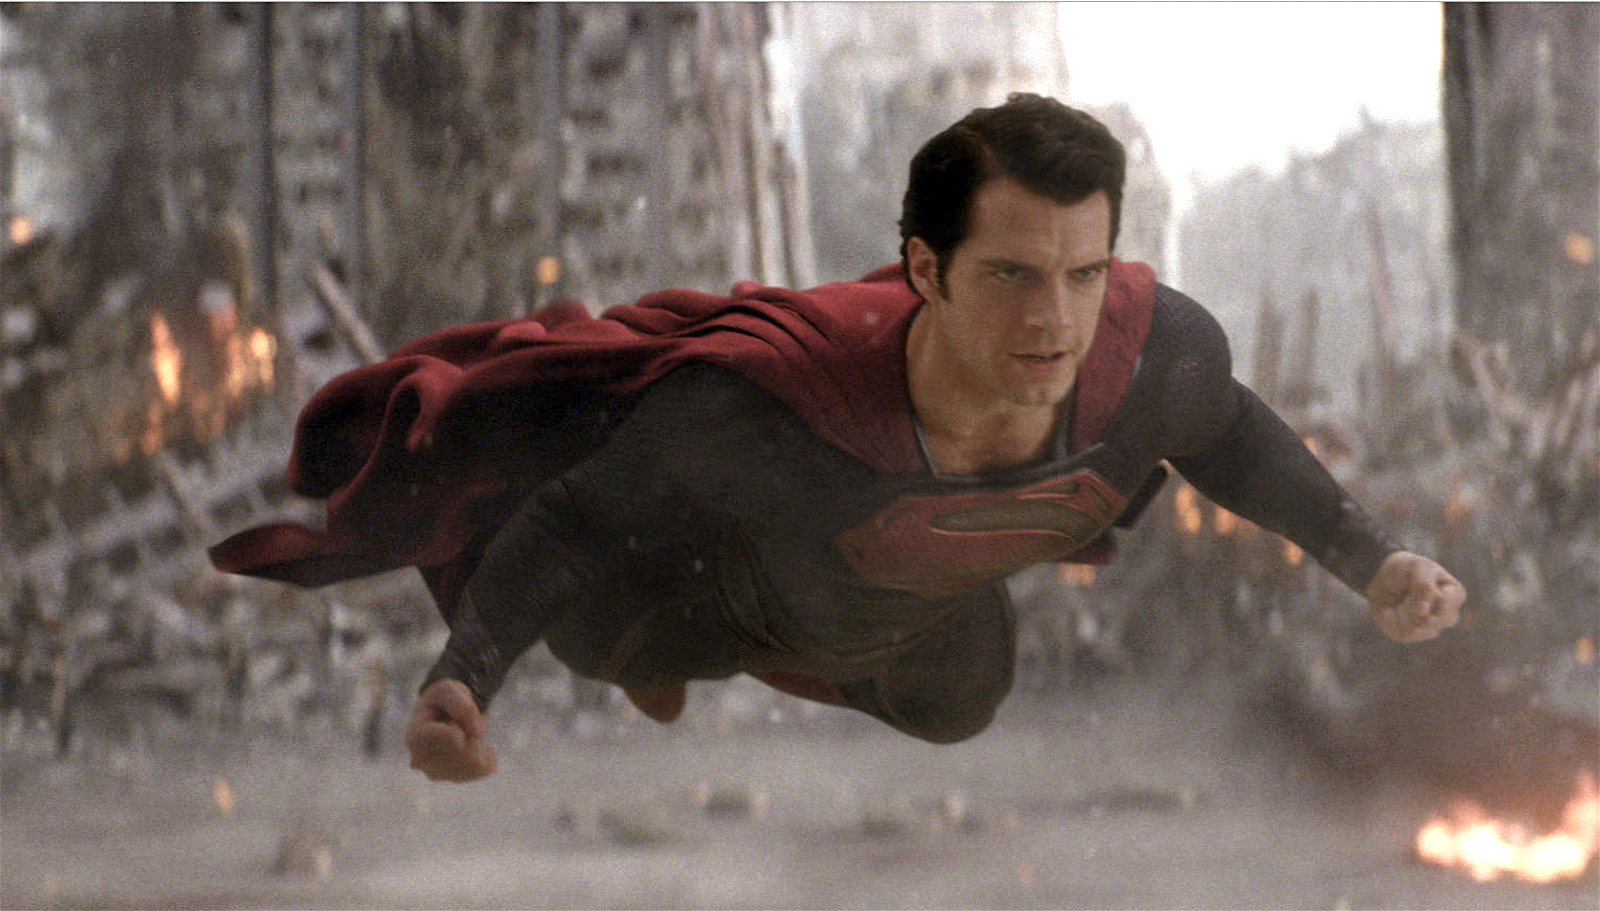 Henry Cavill as Superman.